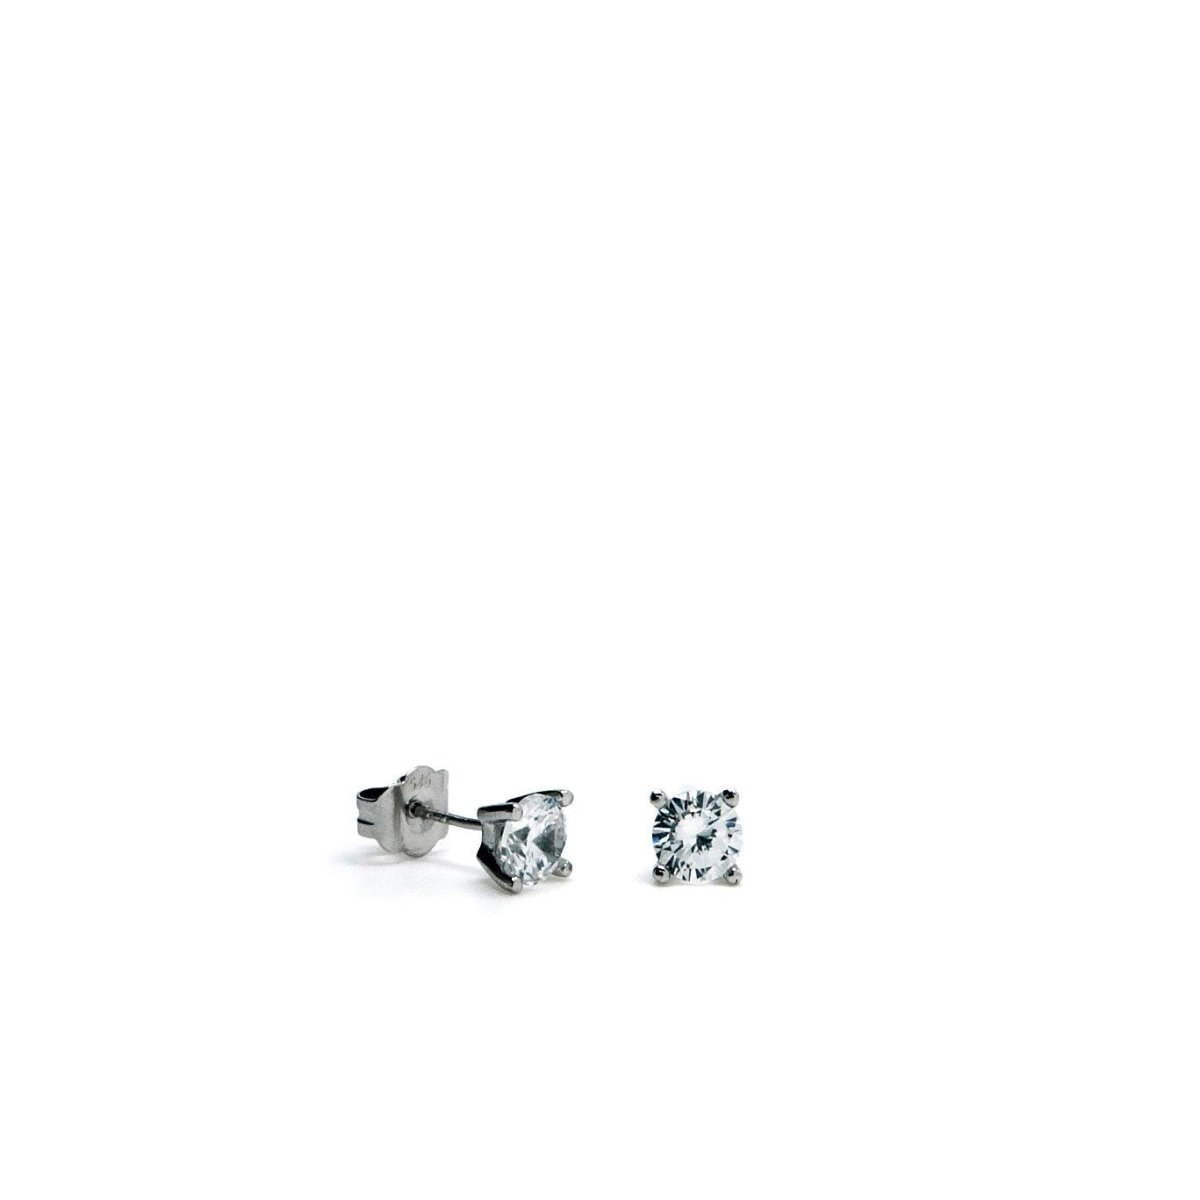 Pendiente · Pendientes pequeños diseño geométrico de plata lisa